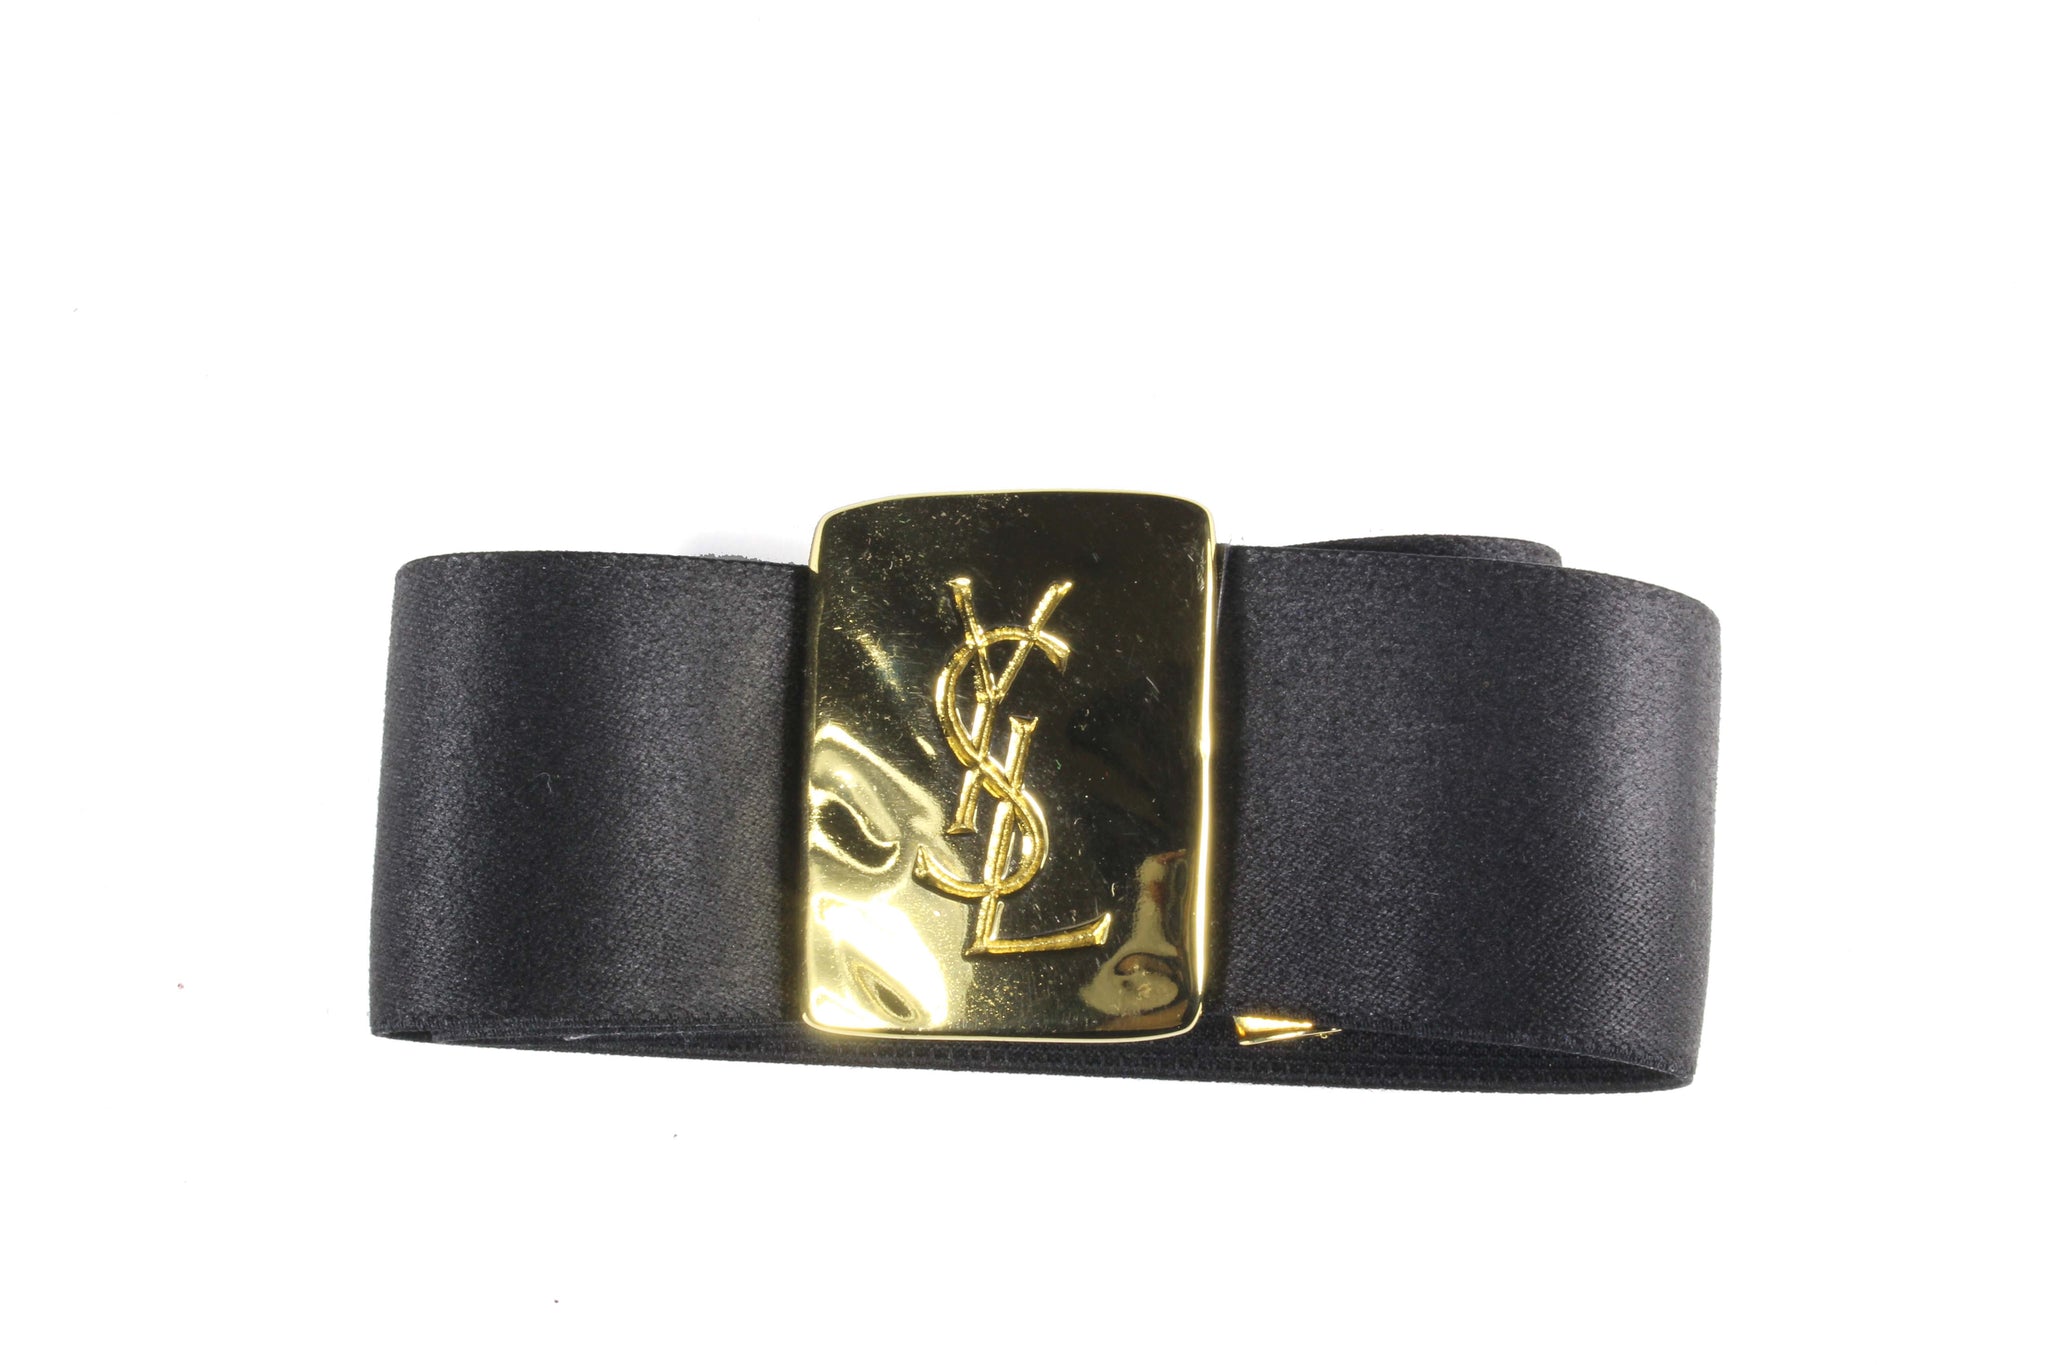 YVES SAINT LAURENT elastic Logo belt – Vintage Carwen